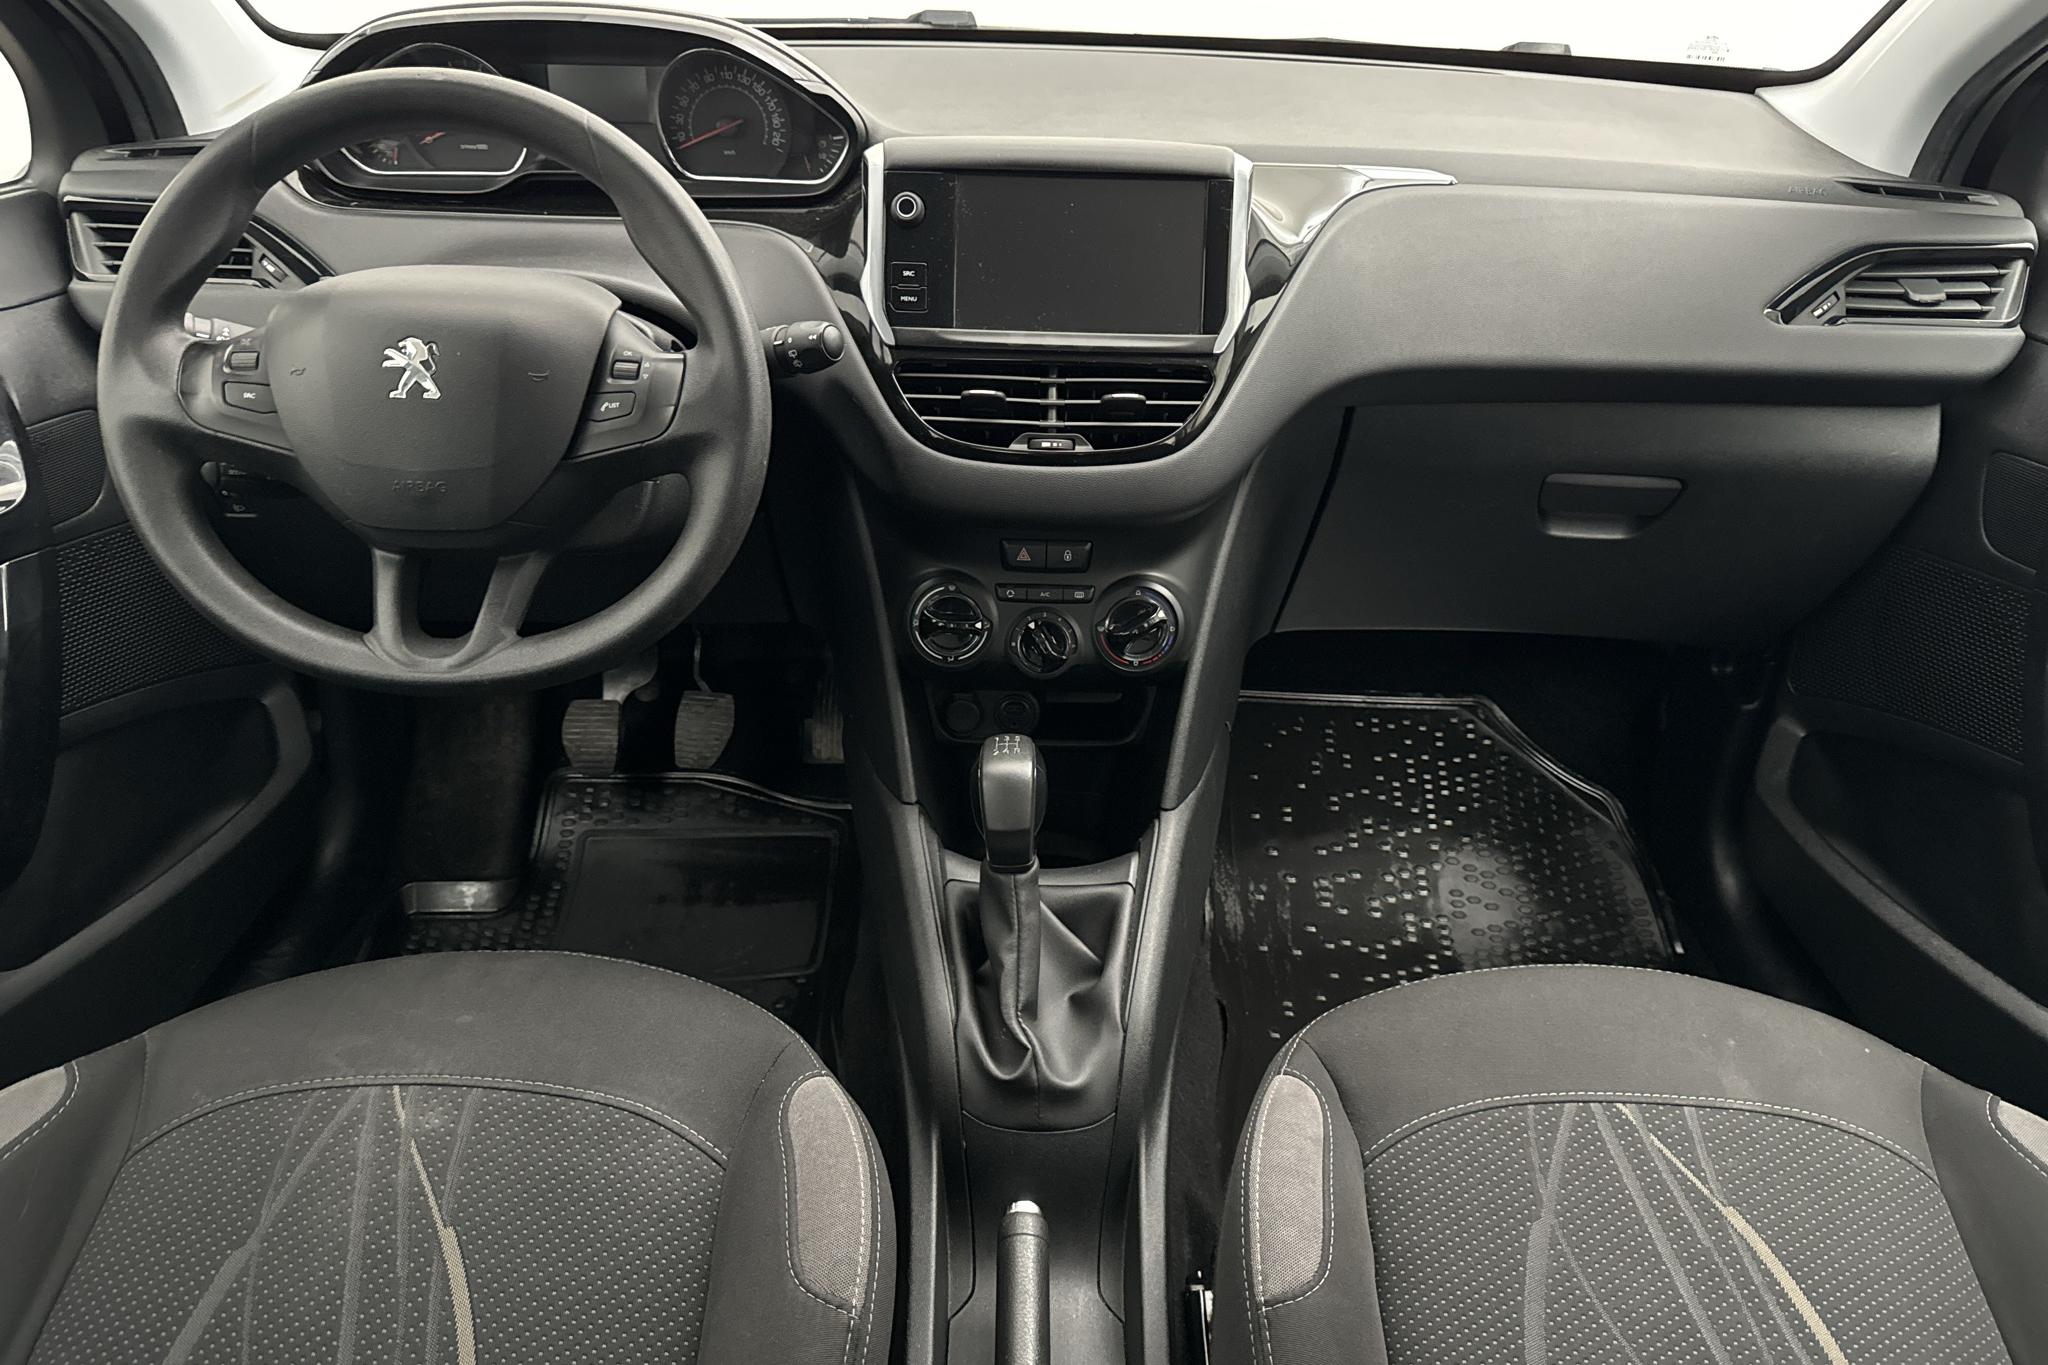 Peugeot 208 1.2 VTi 5dr (82hk) - 13 728 mil - Manuell - svart - 2015